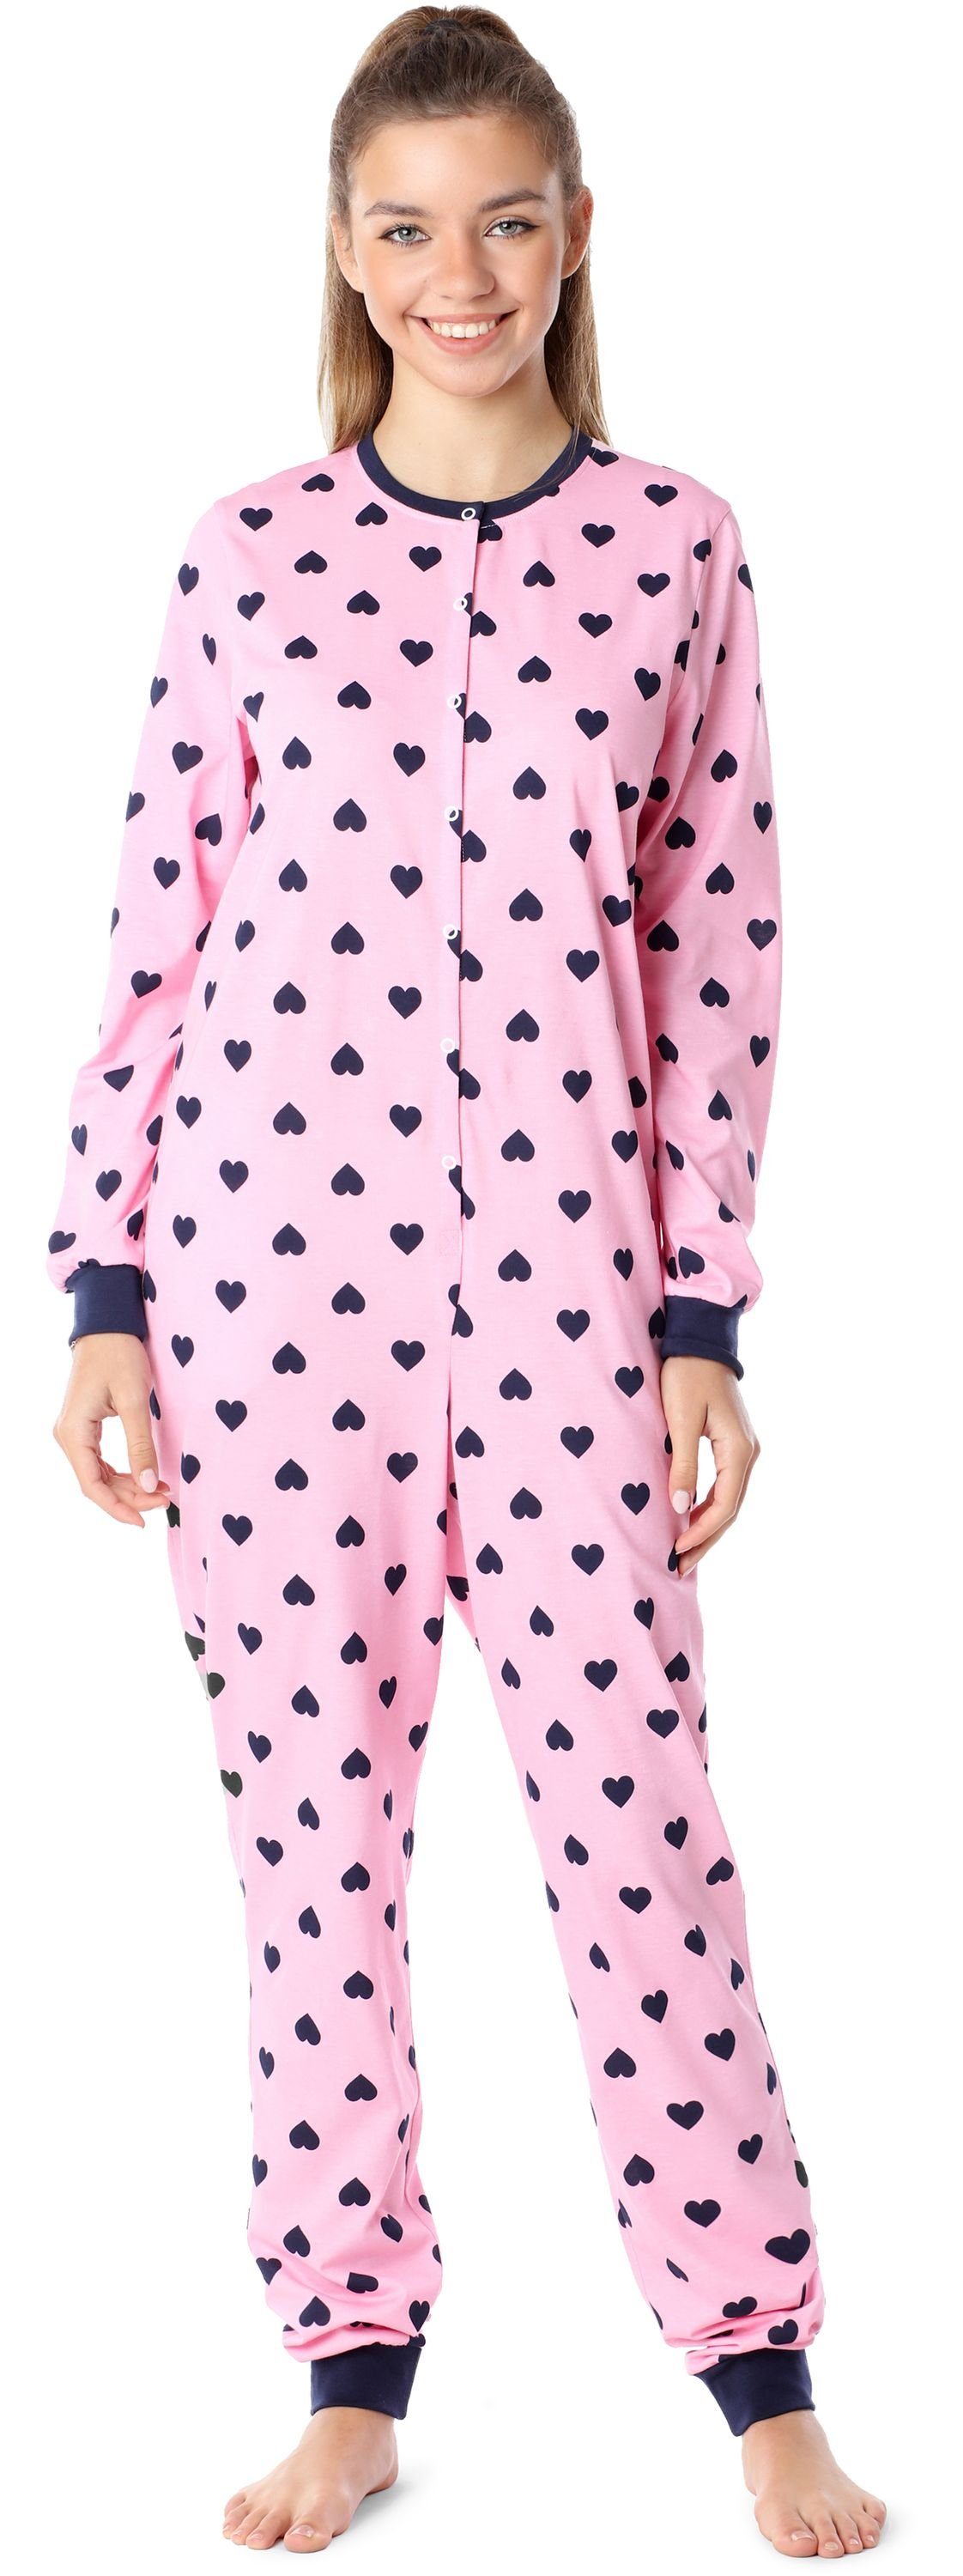 Merry Style Schlafanzug Mädchen Jugend Schlafanzug Schlafoverall MS10-335 Rosa/Dunkelblau Herzen | Pyjamas